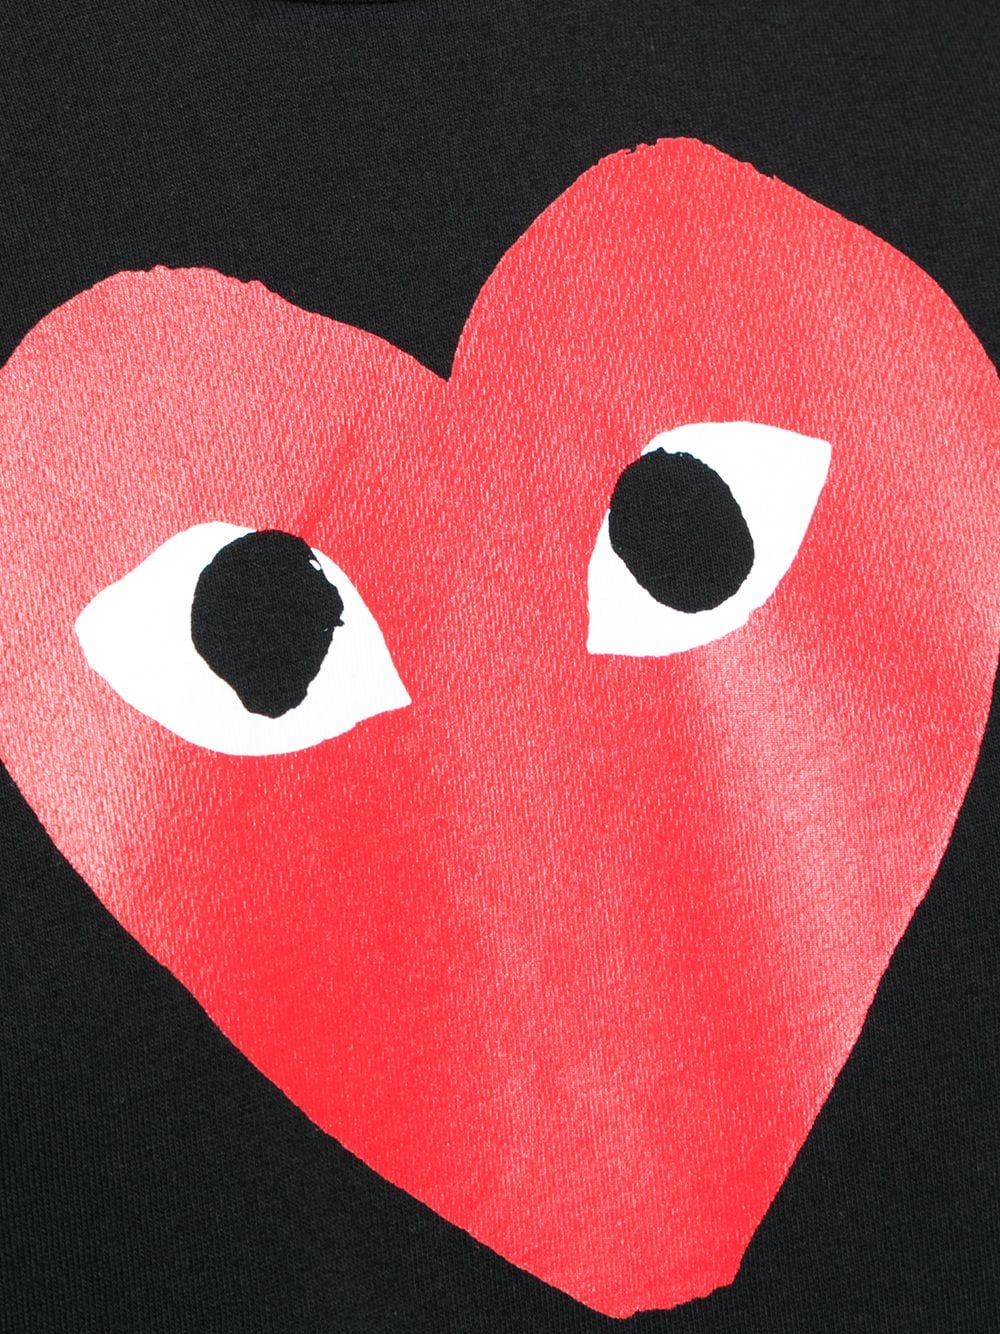 T-shirt girocollo nera con stampa cuore rosso